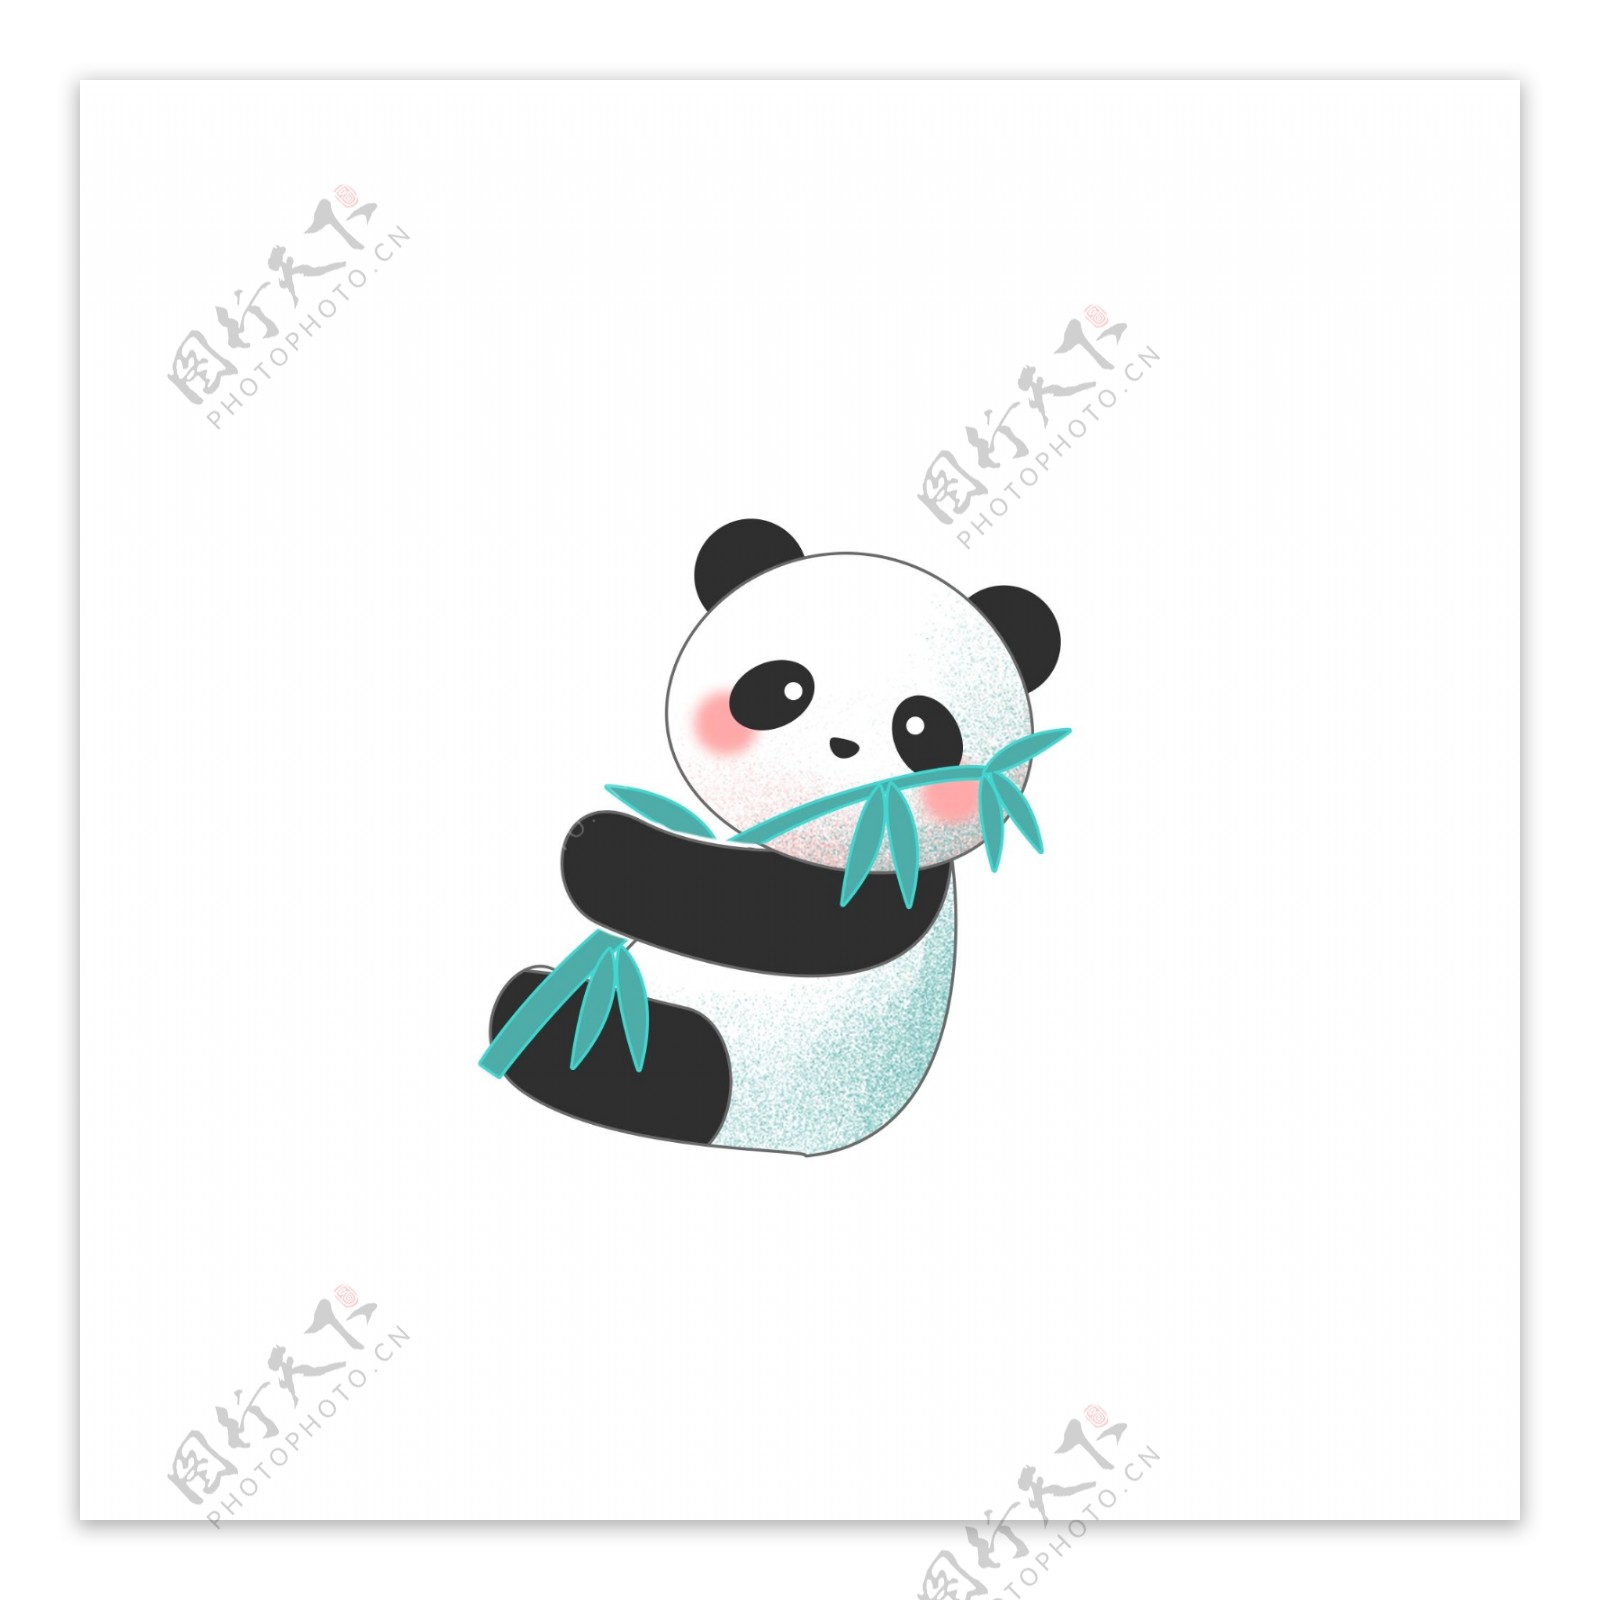 抱着竹子的熊猫图案元素